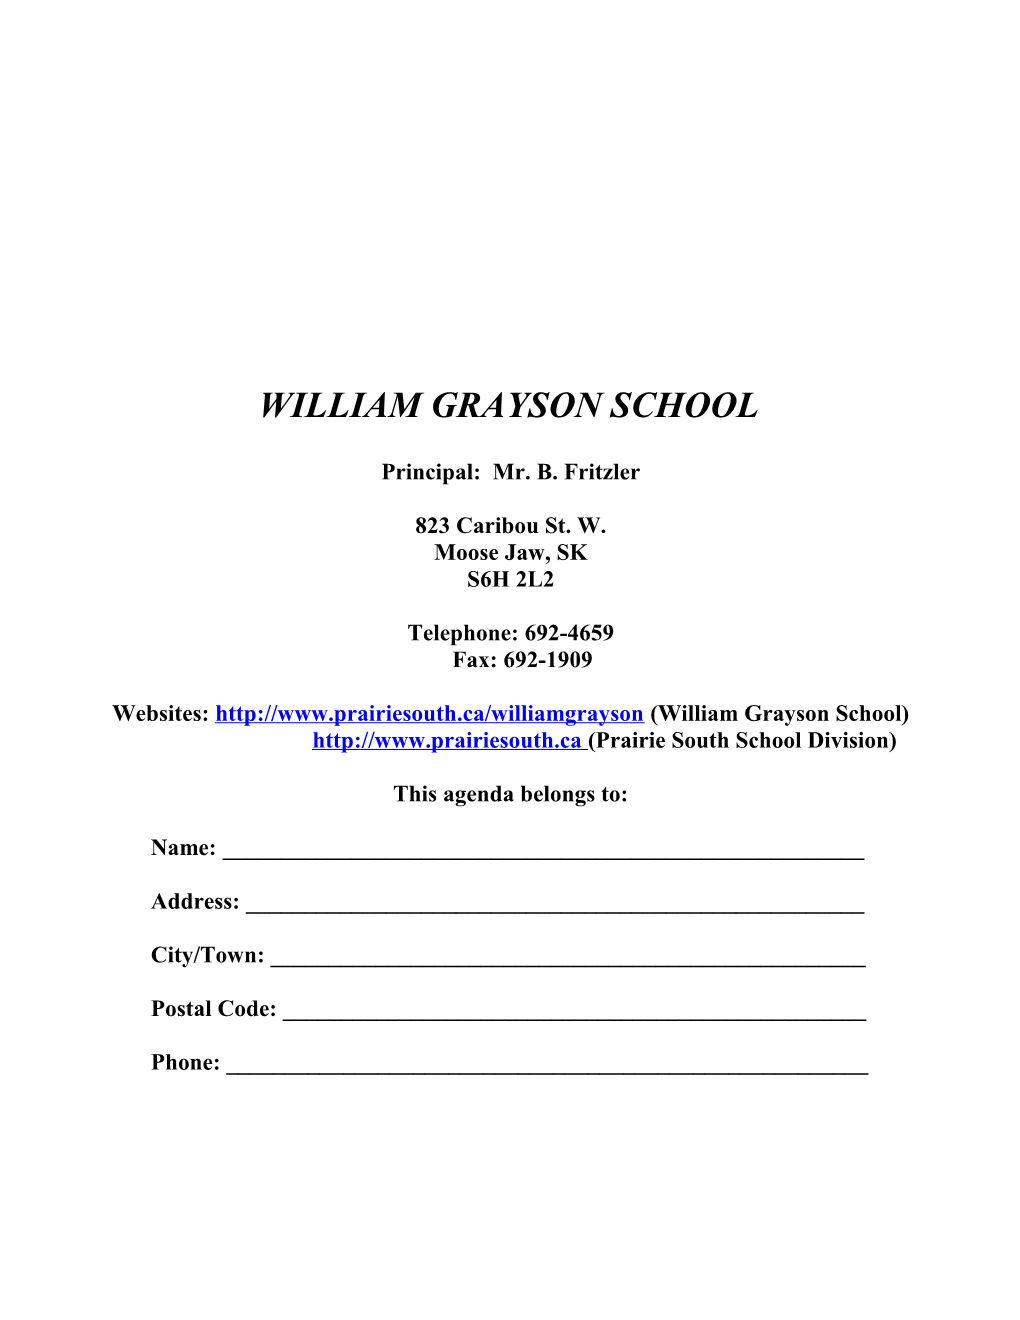 William Grayson School